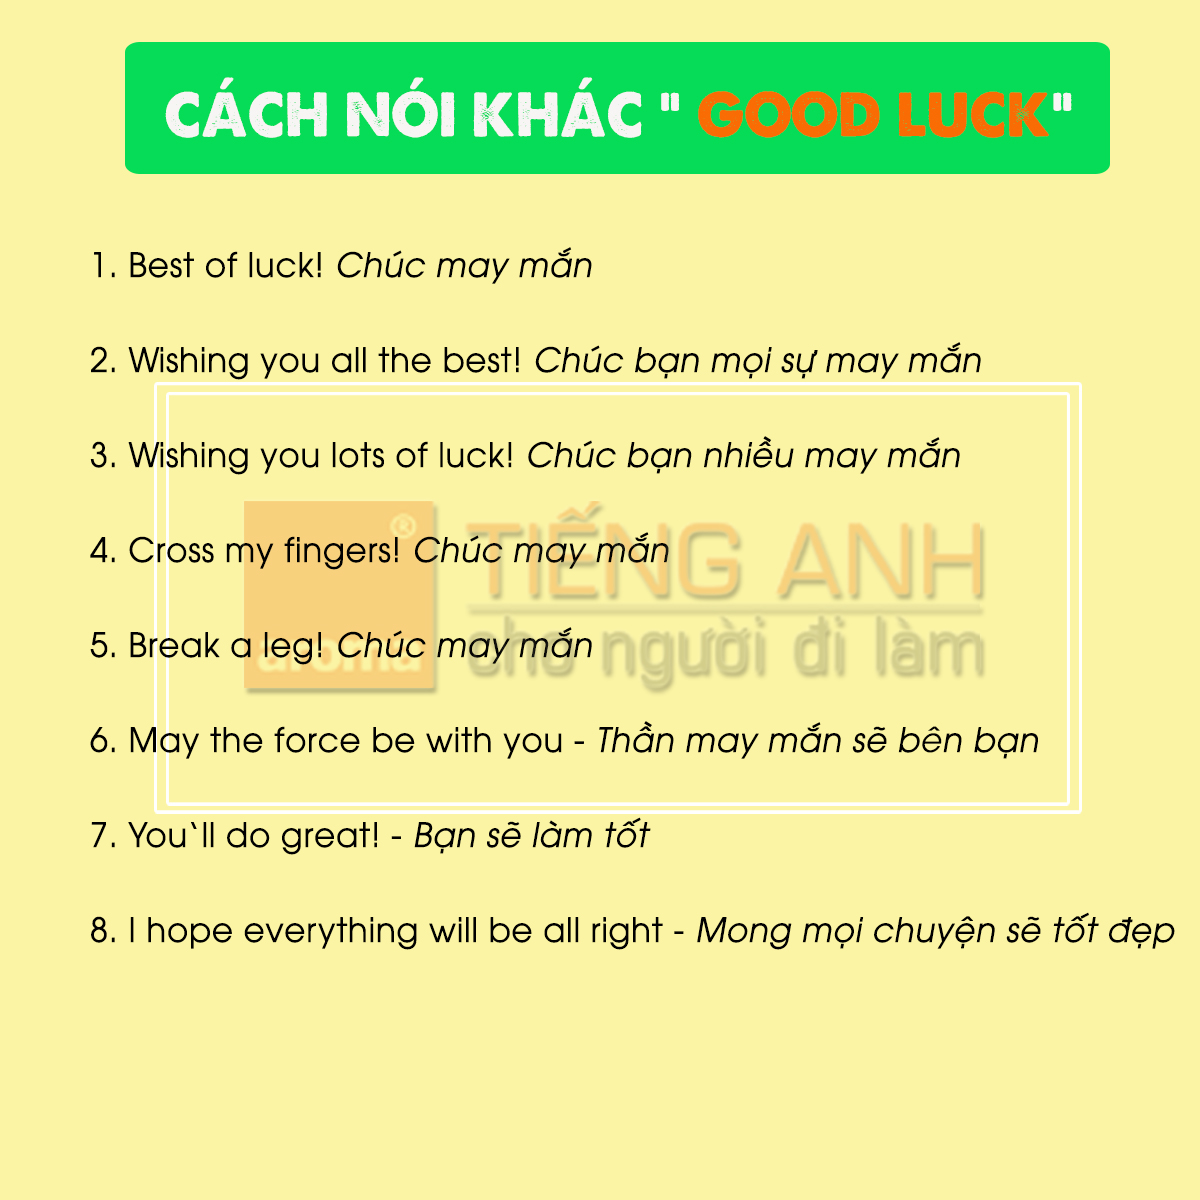 cach-noi-khac-good-luck